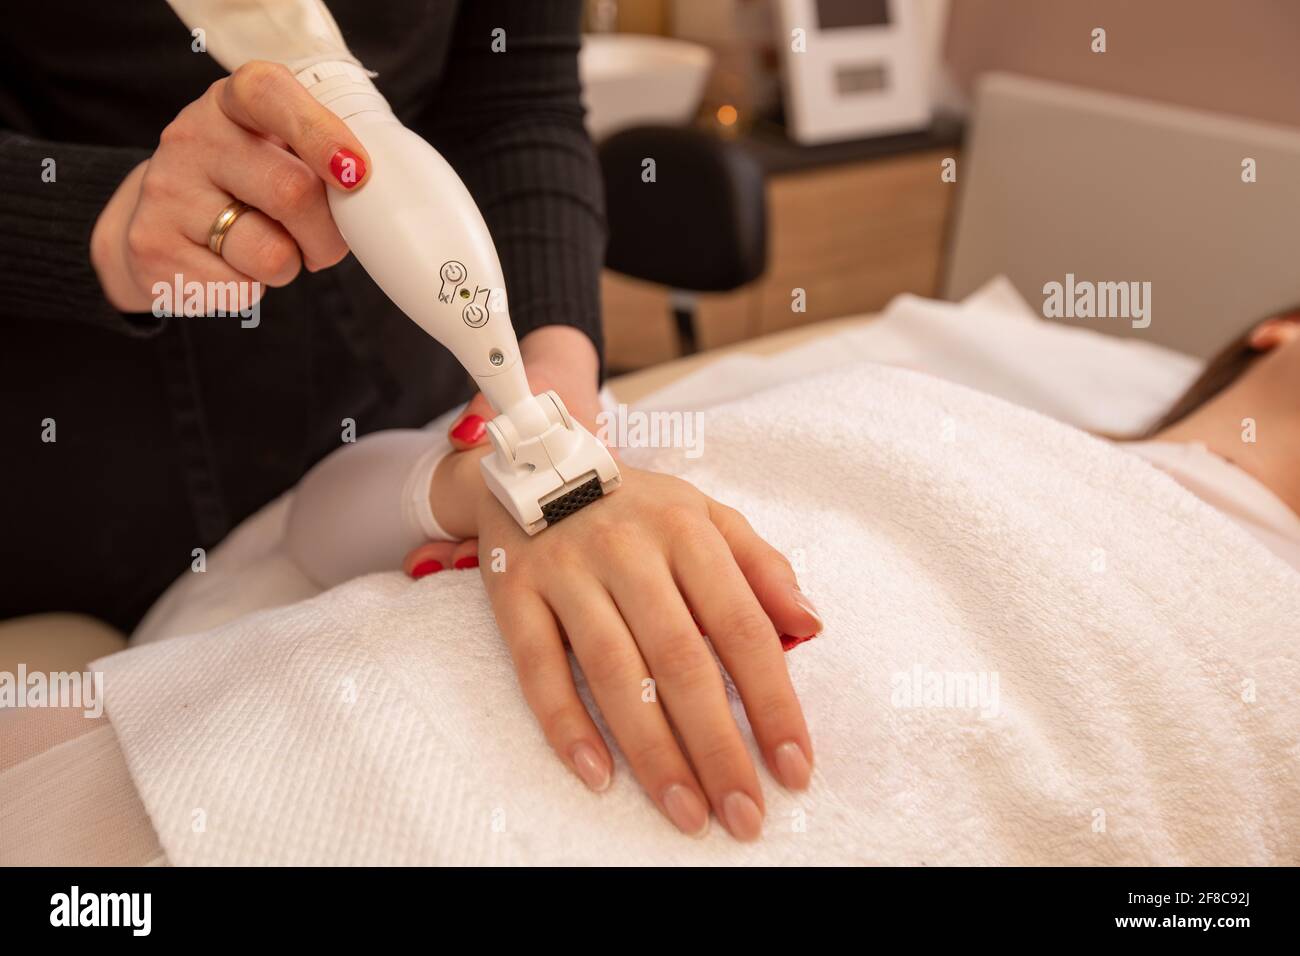 le mani della donna ricevono una procedura di cura della pelle della mano. concetto di trattamento di bellezza nel salone di bellezza. Foto Stock